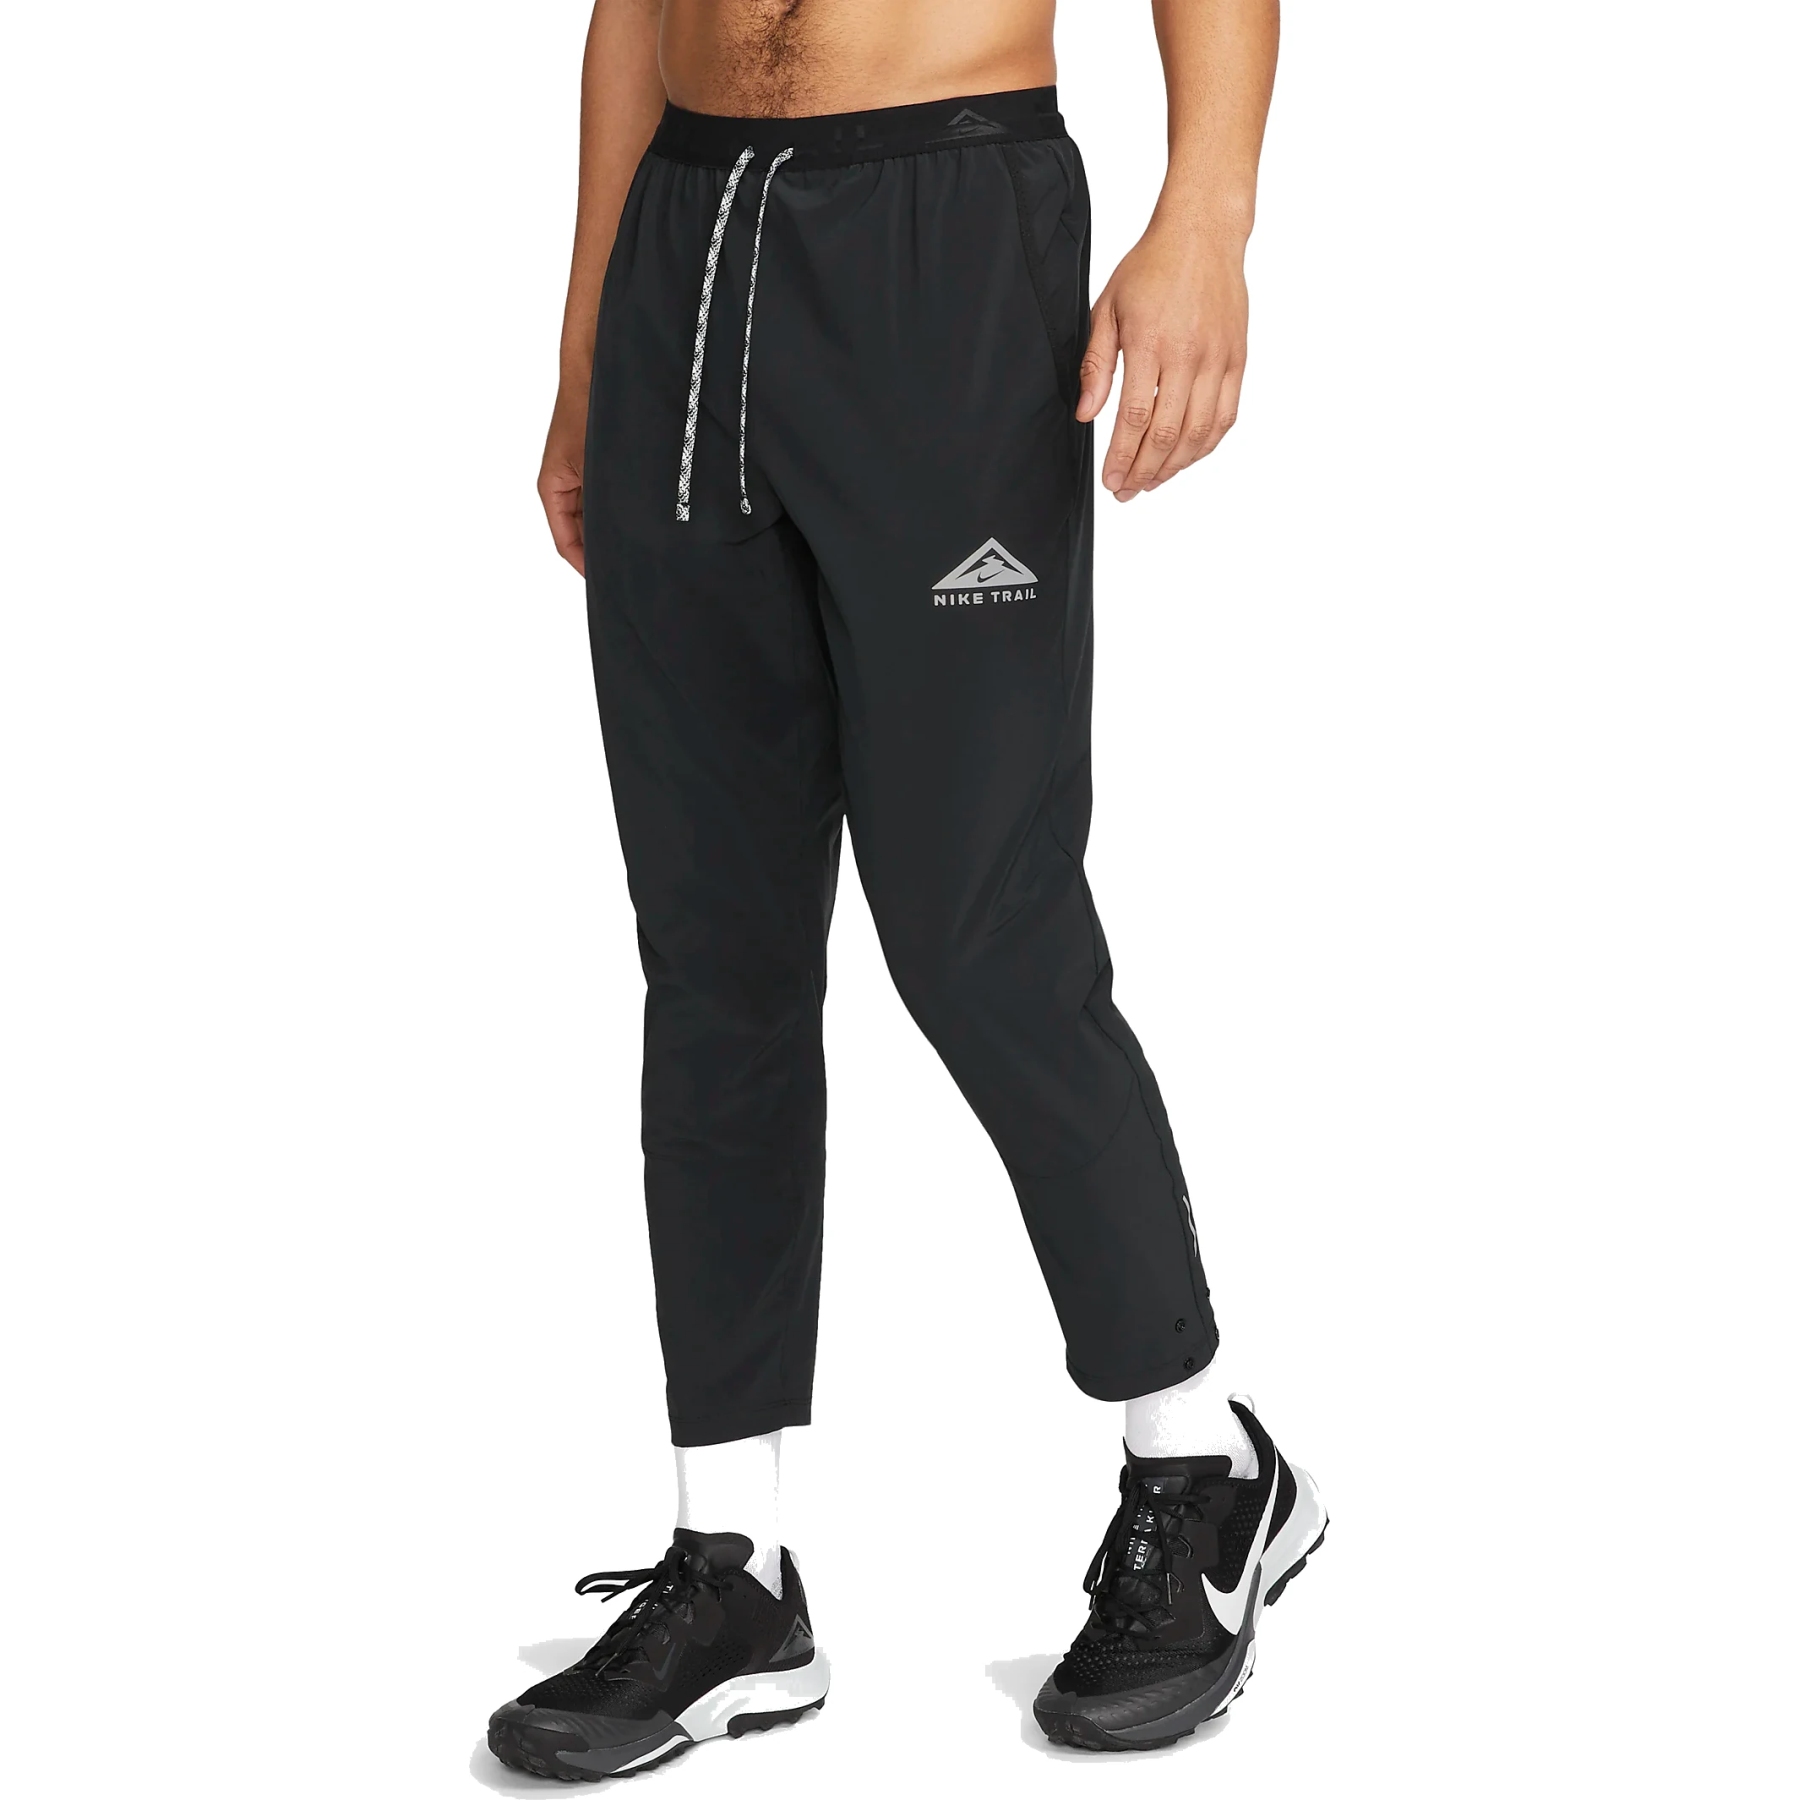 Produktbild von Nike Trail Dawn Range Dri-FIT-Laufhose für Herren - schwarz/schwarz/weiß DX0855-010